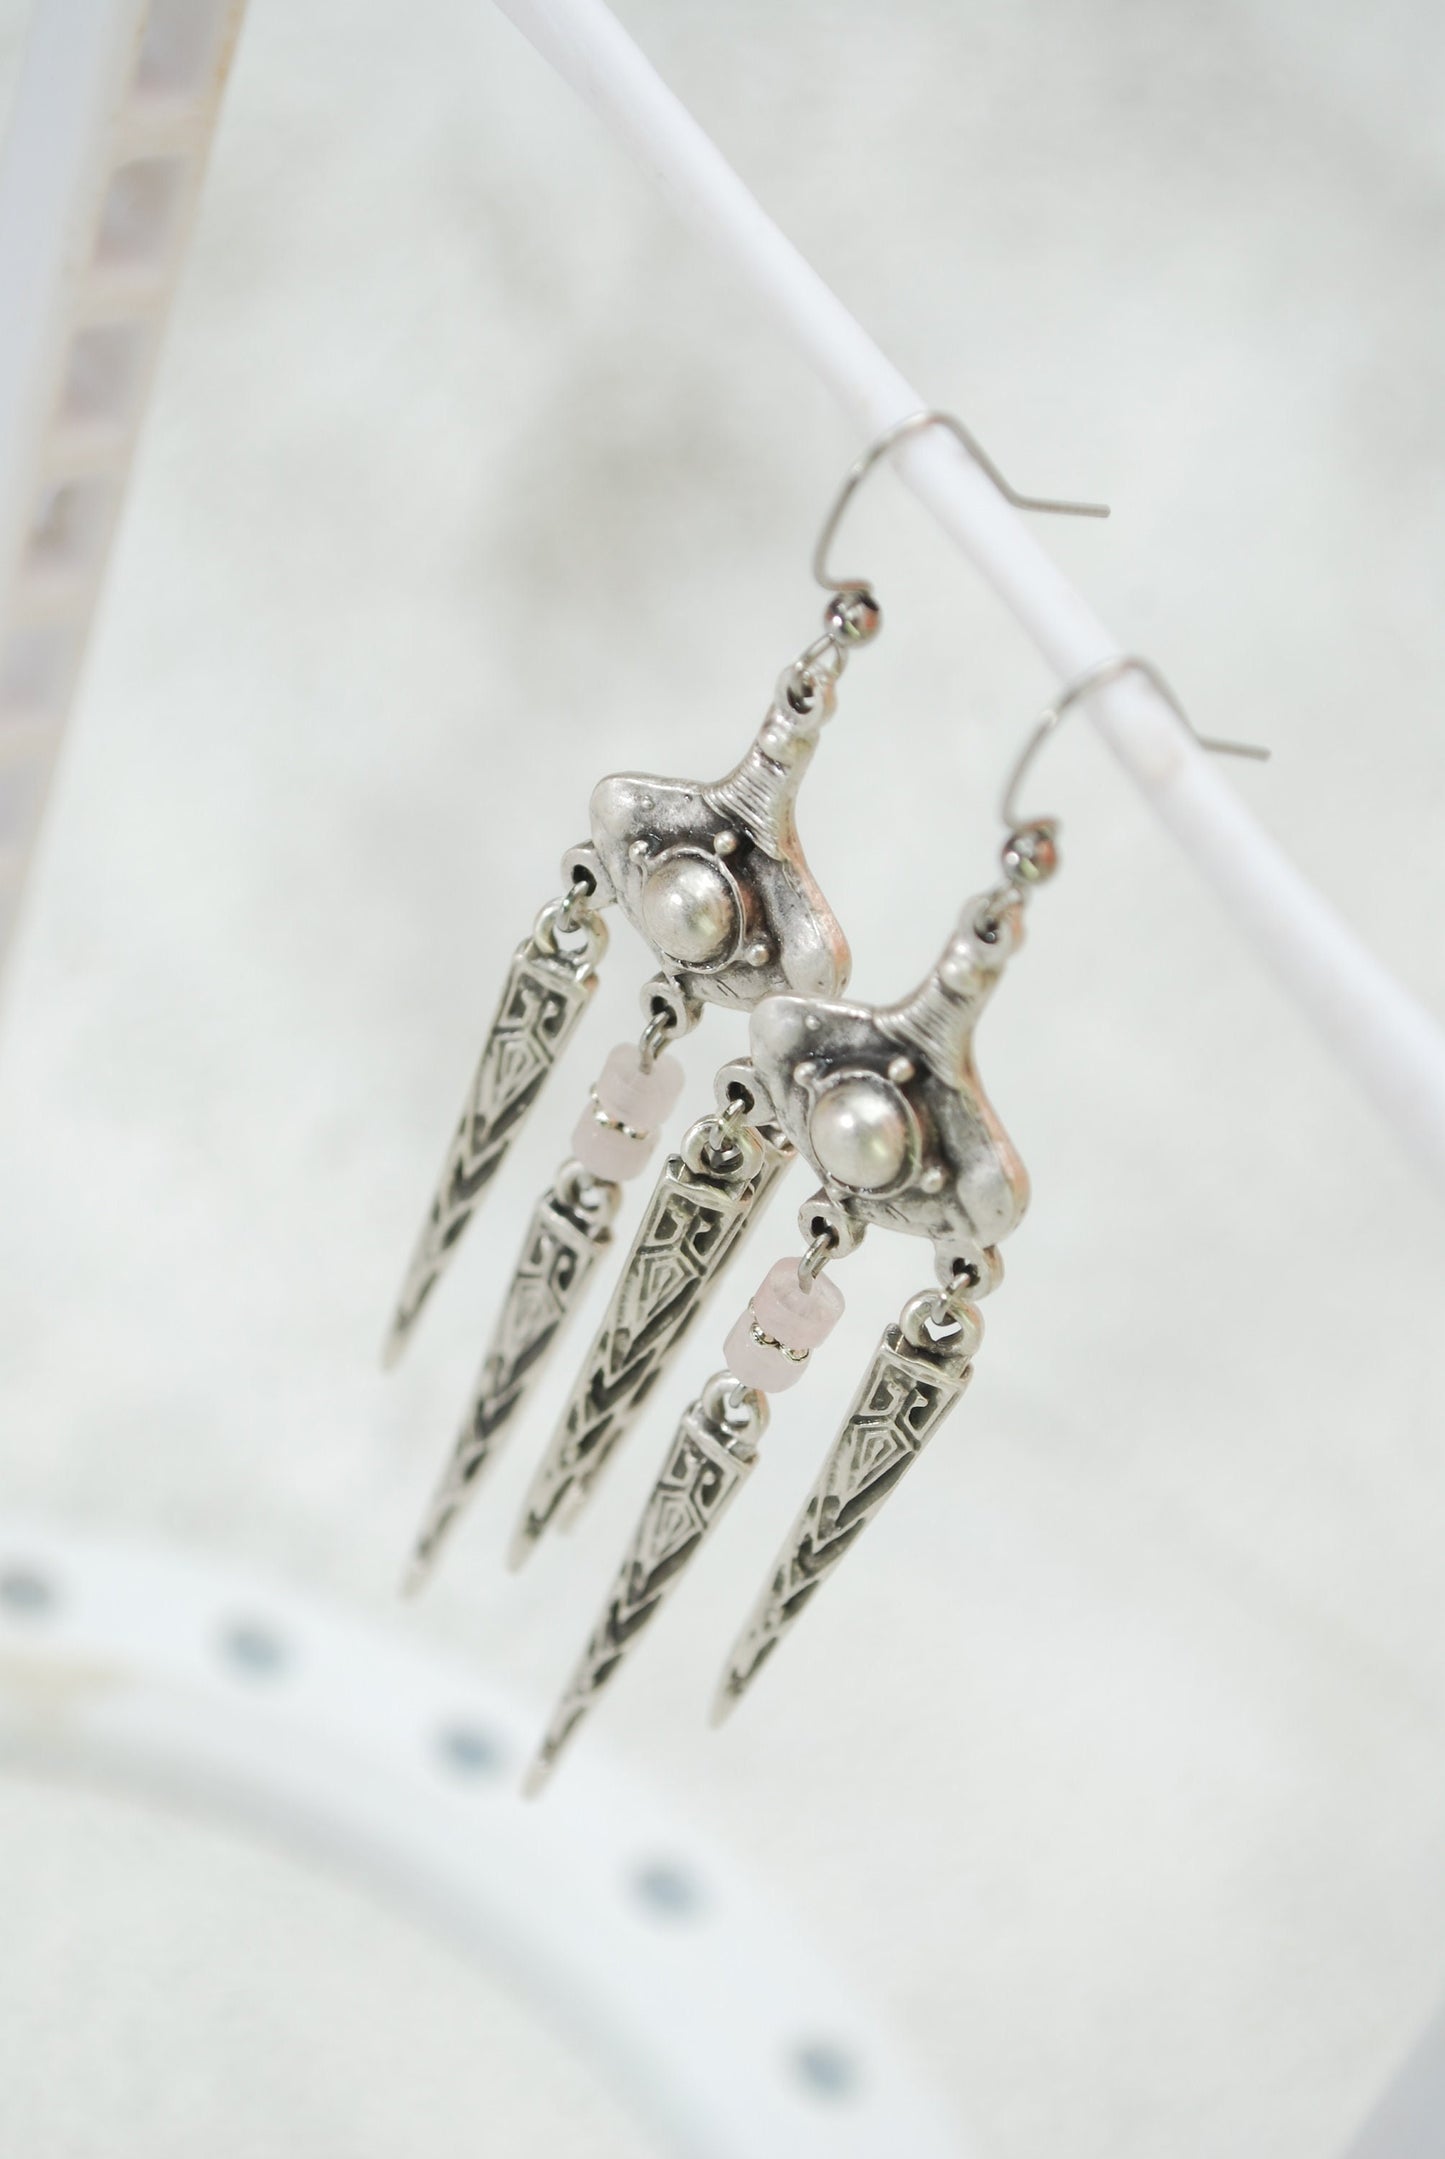 Aztec Inca Earrings, Tribal Jewelry, Antique silver Spike Earrings, Ethnic Art, 8.5 cm 3.4" Pink Quartz stone